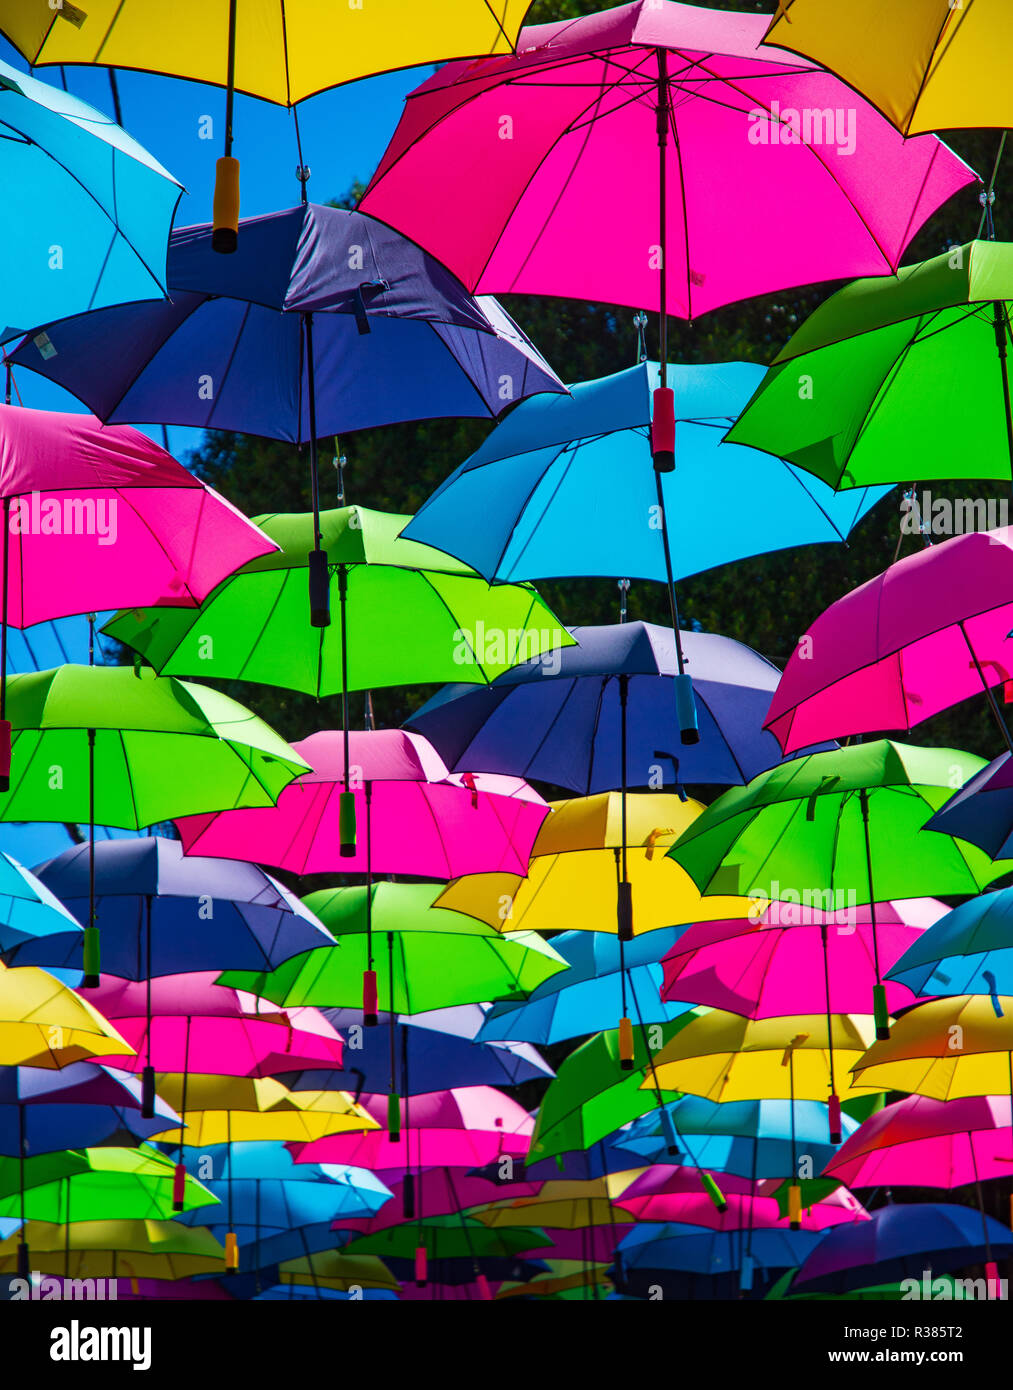 Bunten Regenschirm Dachabdeckung schwimmend auf Drähte. Stockfoto